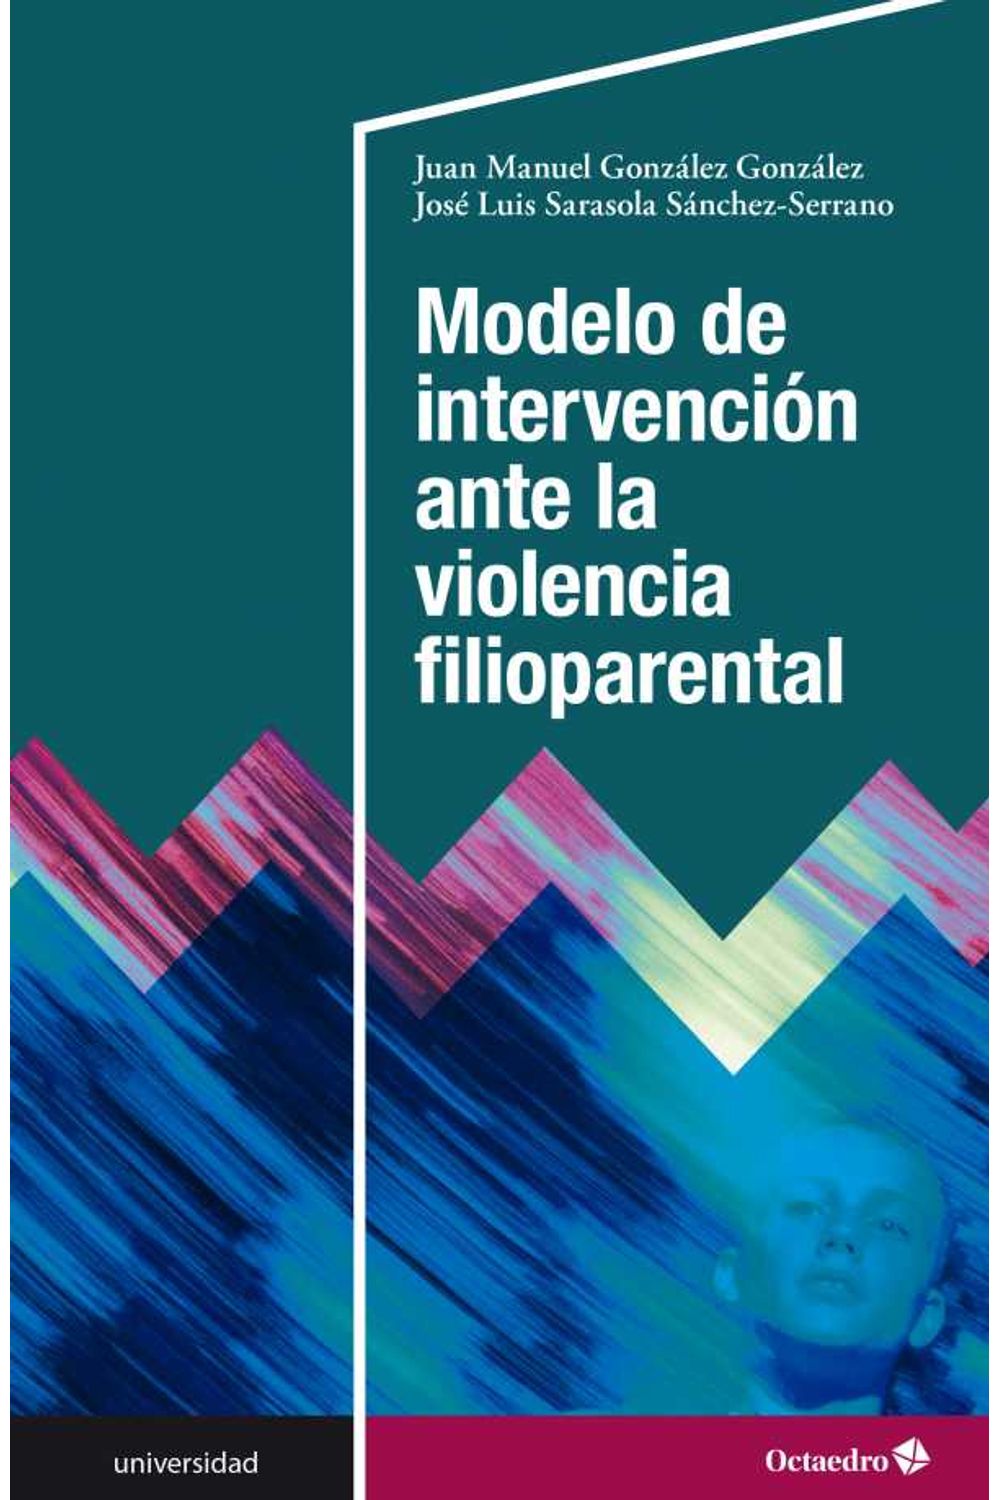 bw-modelo-de-intervencioacuten-ante-la-violencia-filioparental-ediciones-octaedro-9788418615481